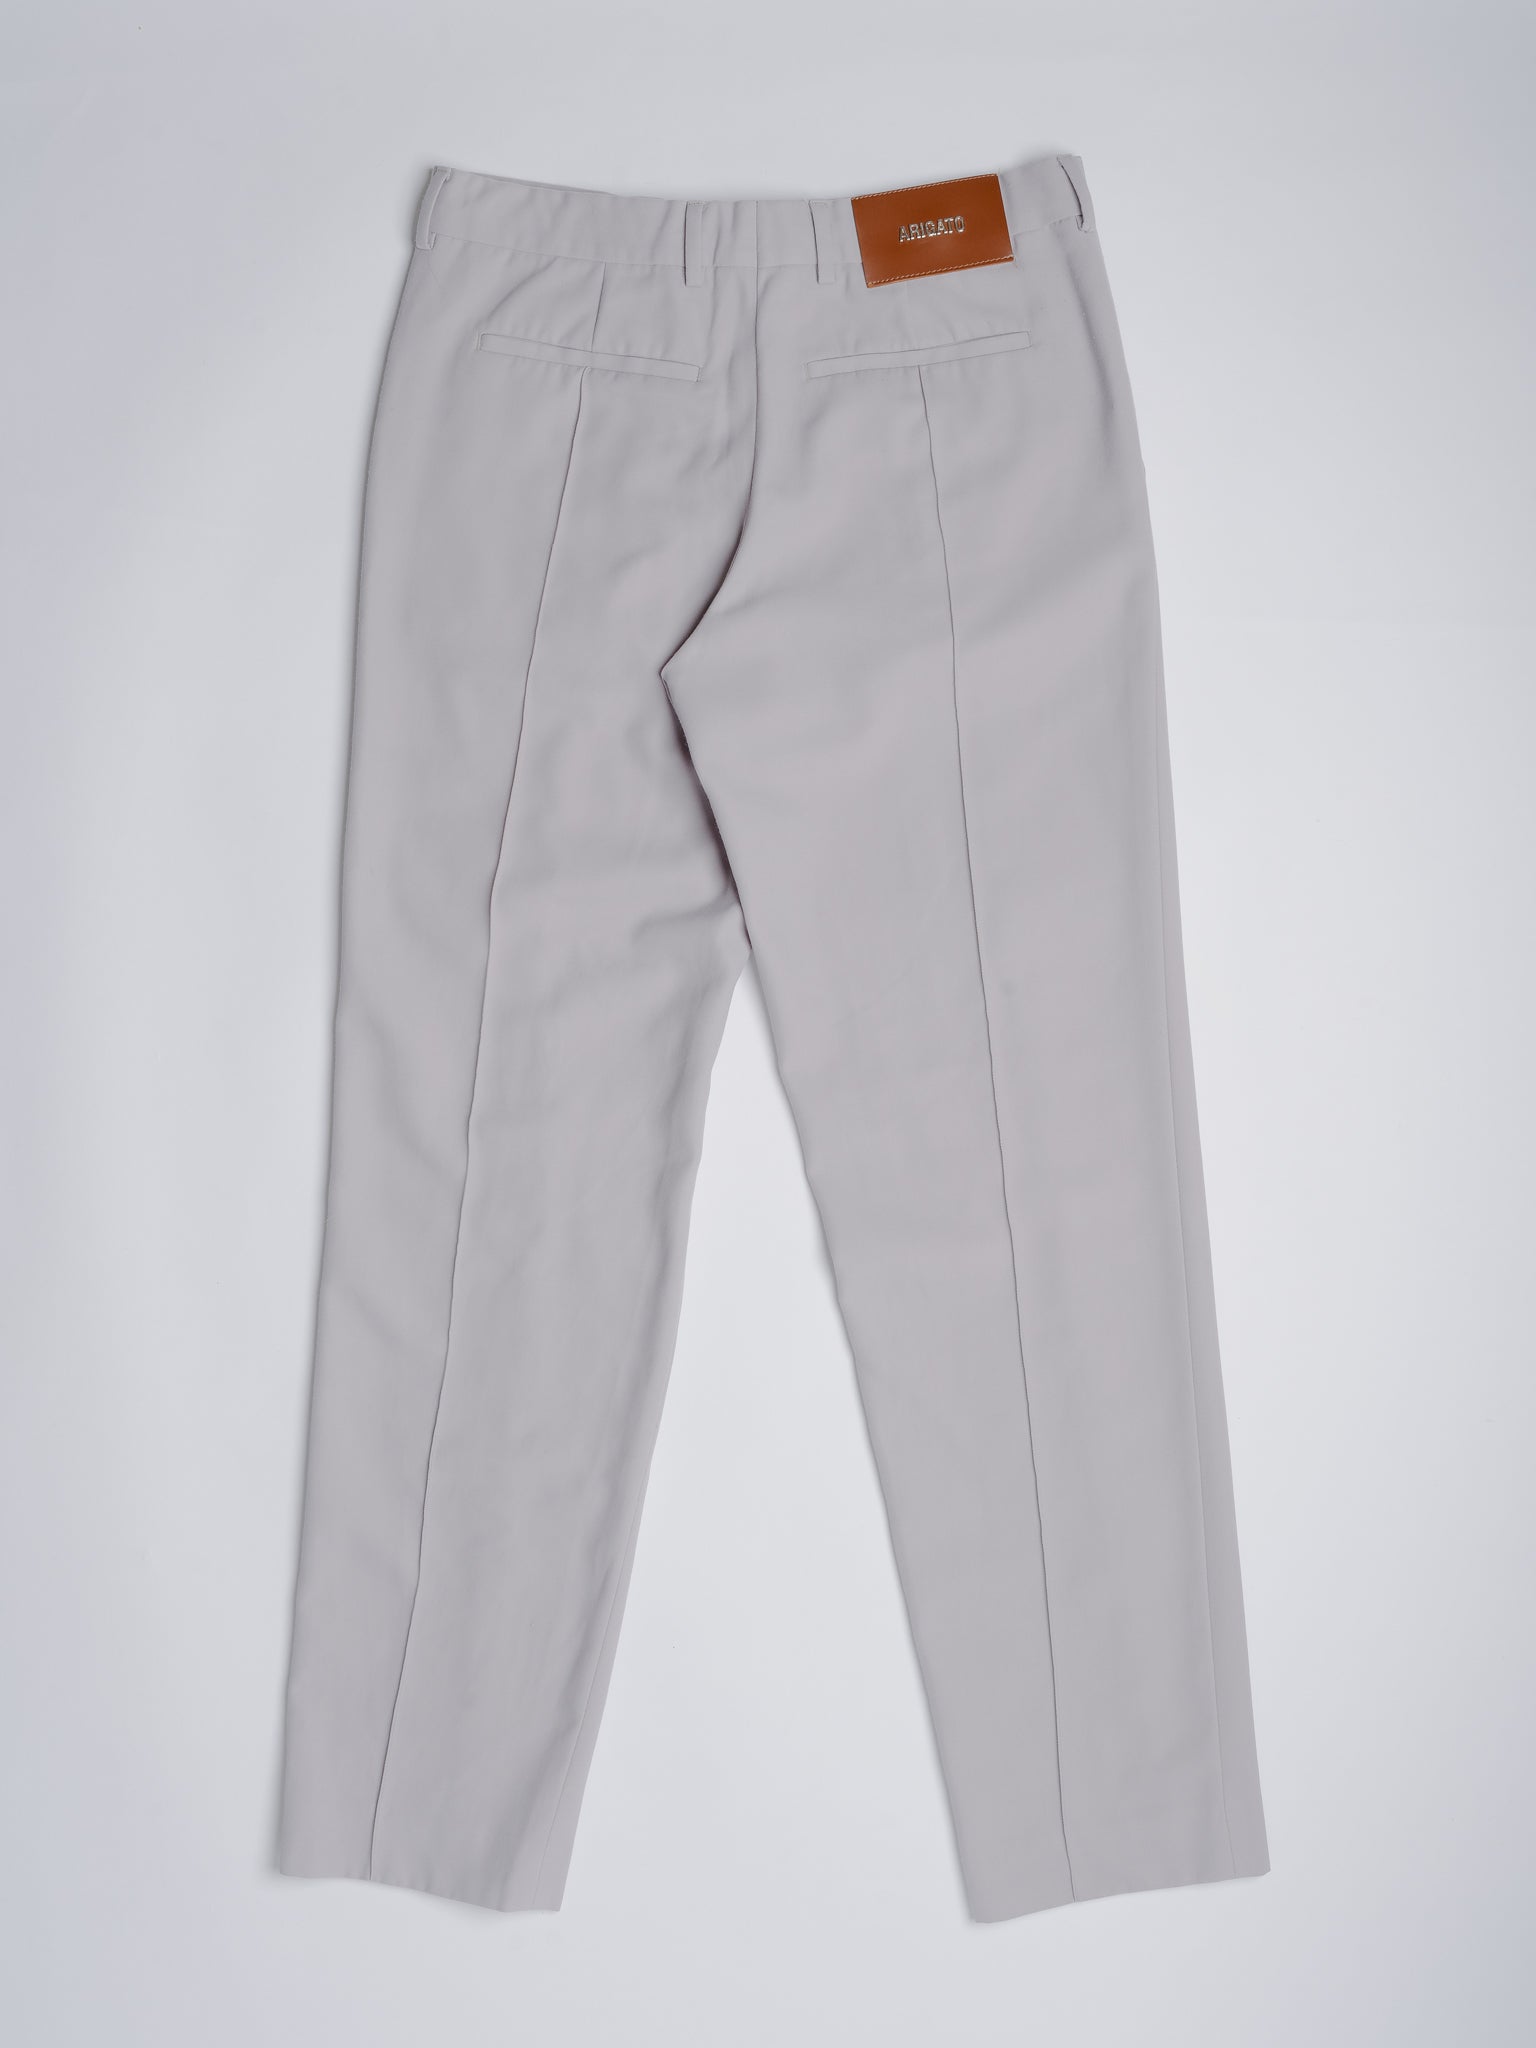 Trousers M Beige/Grey